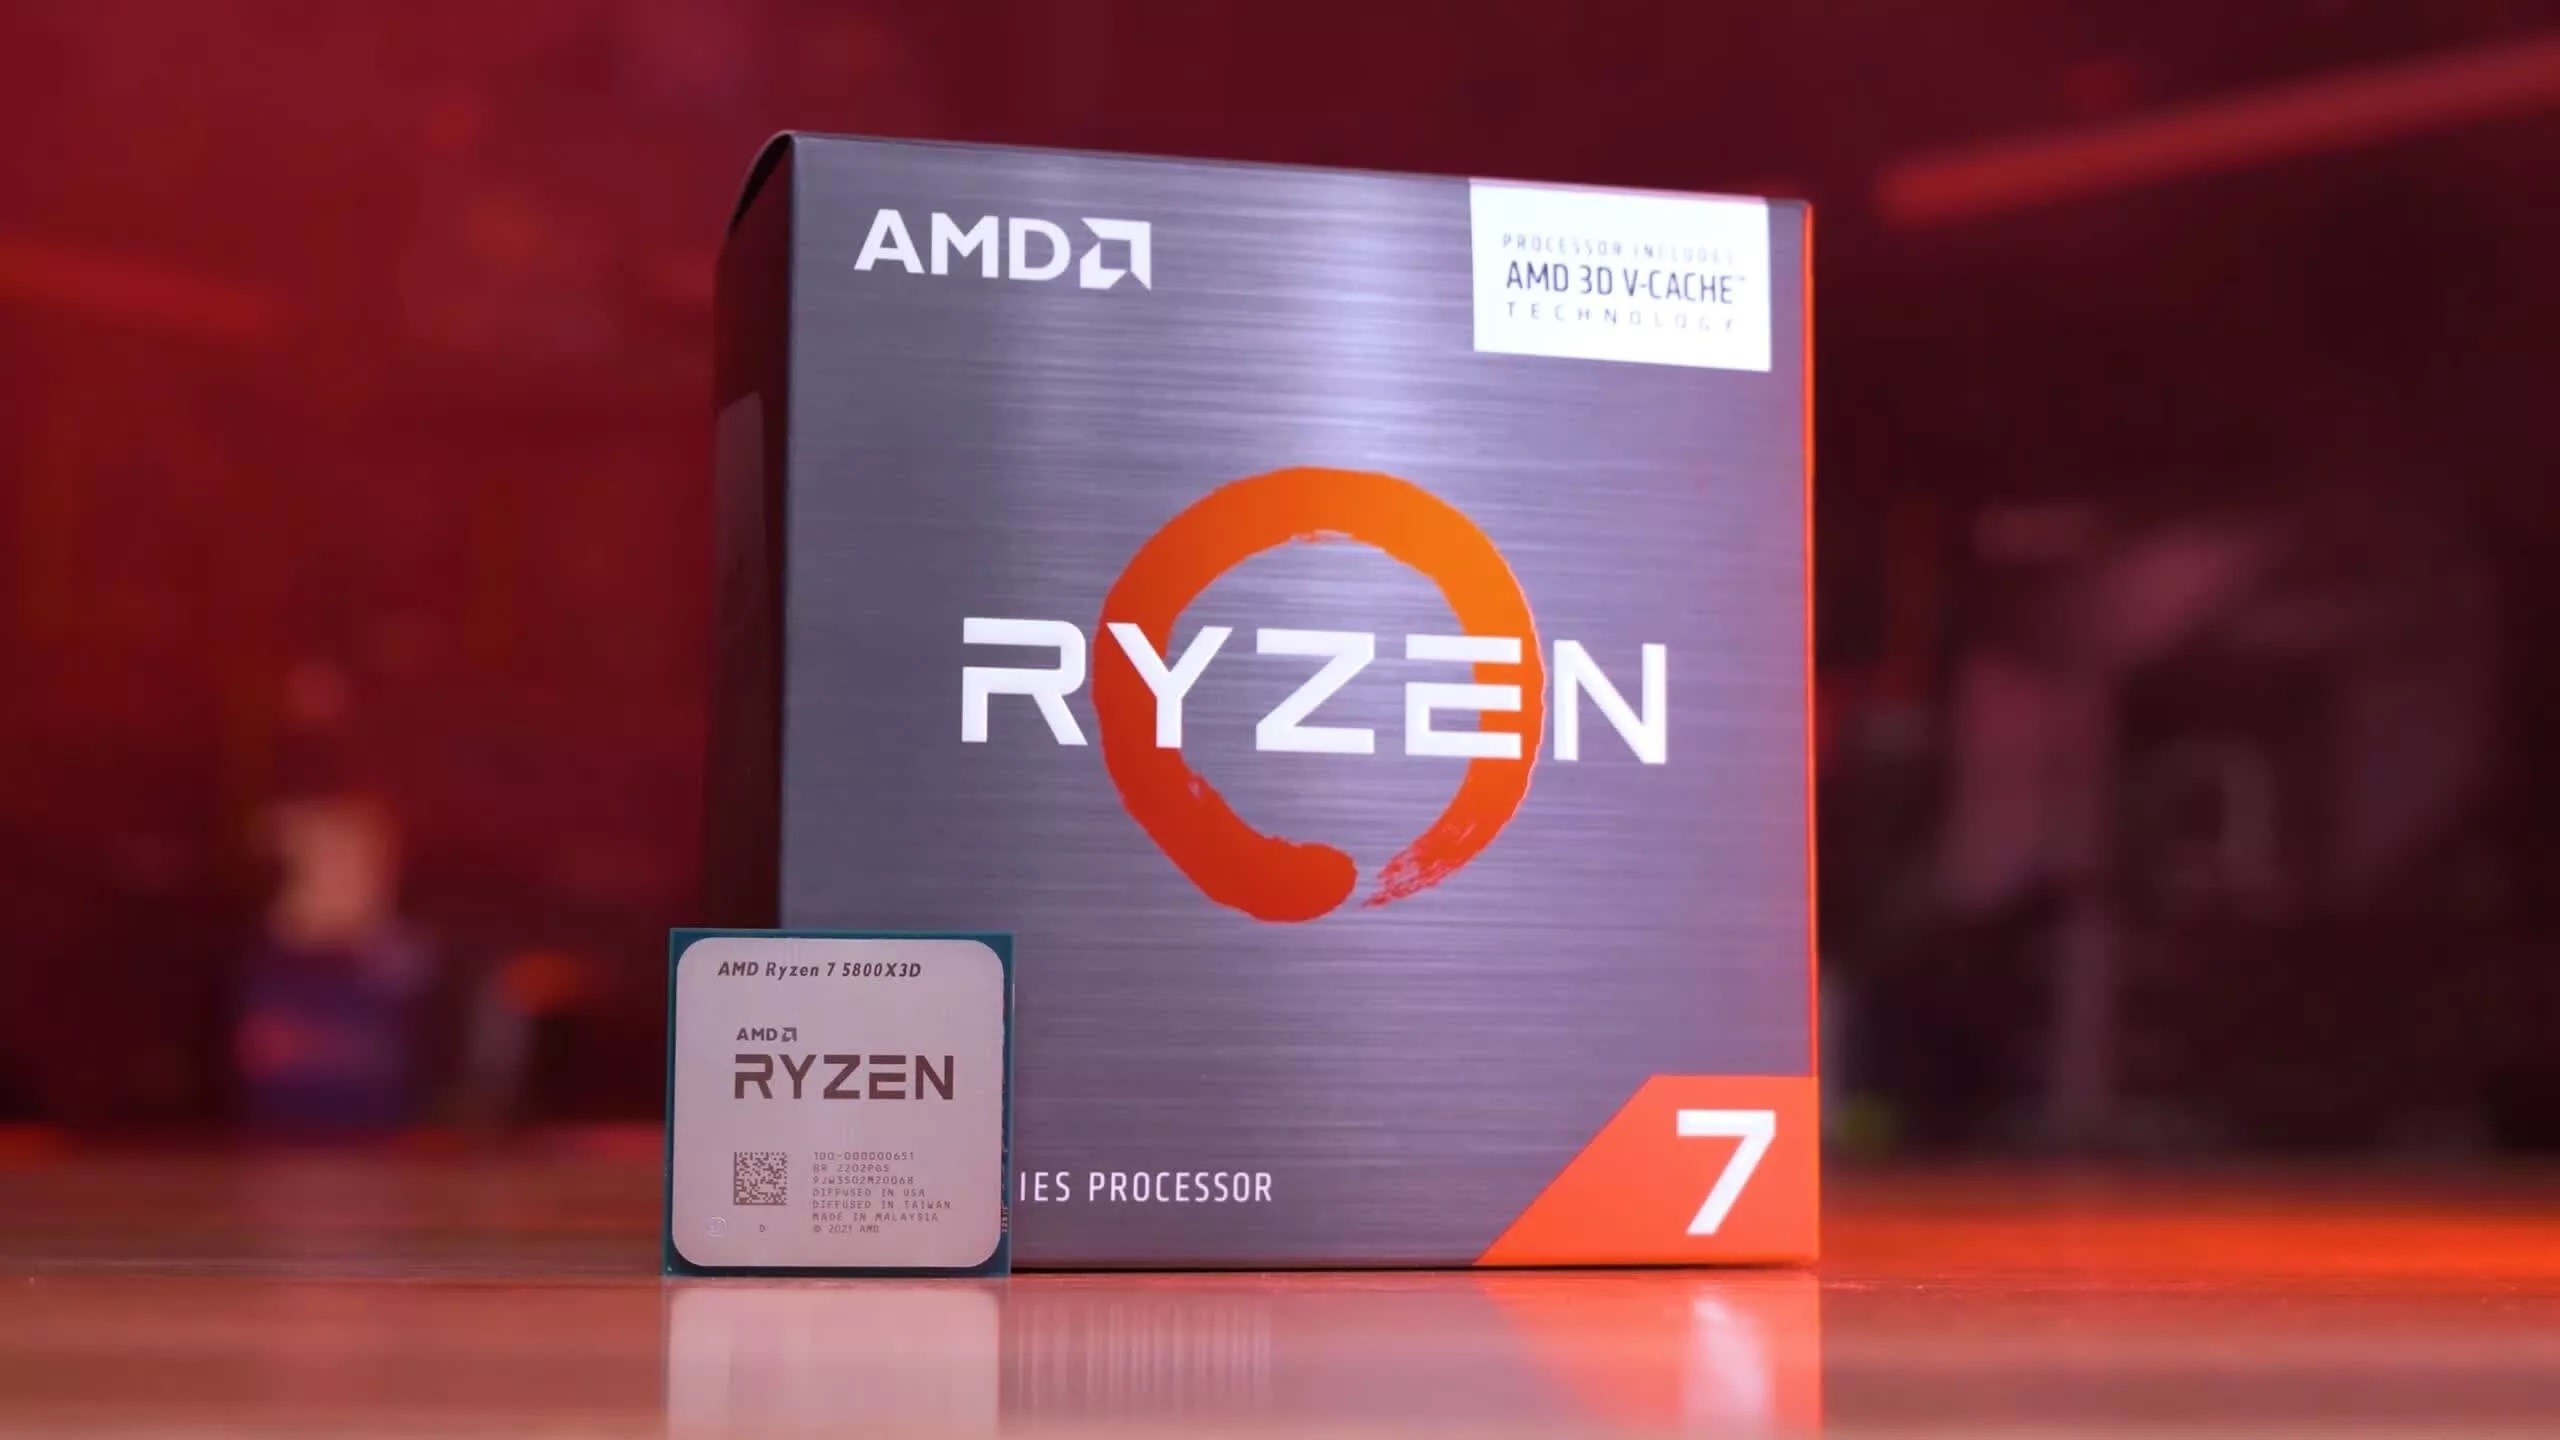 En iyi AM4 işlemcisi AMD Ryzen 7 5800X3D fiyatları dibi gördü